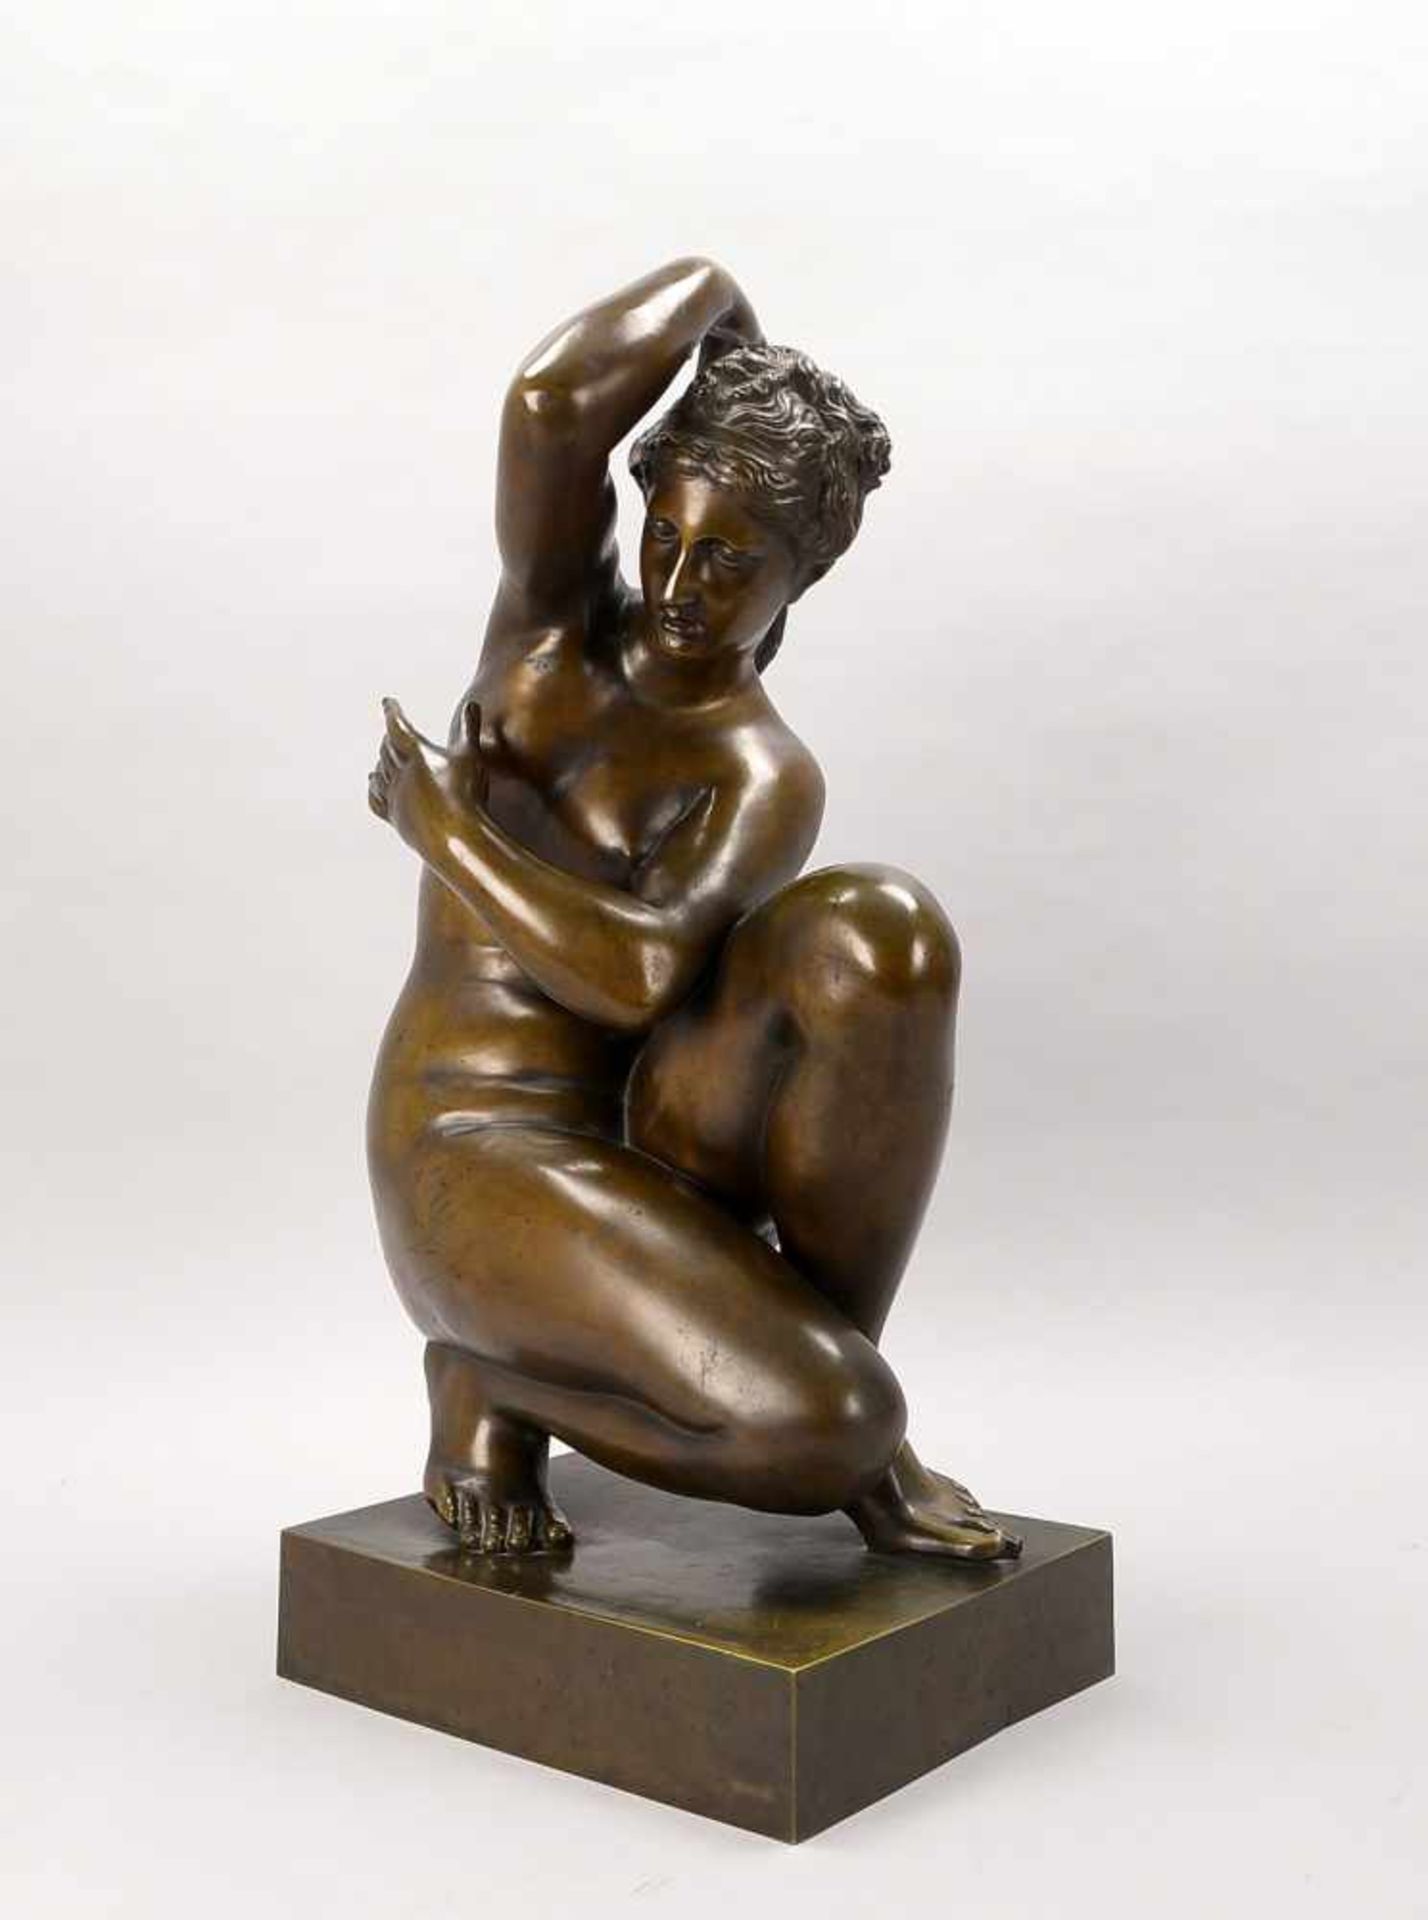 Große Bronzeskulptur (nach Antonio Canova, 1757 - 1822; italienischer Bildhauer des